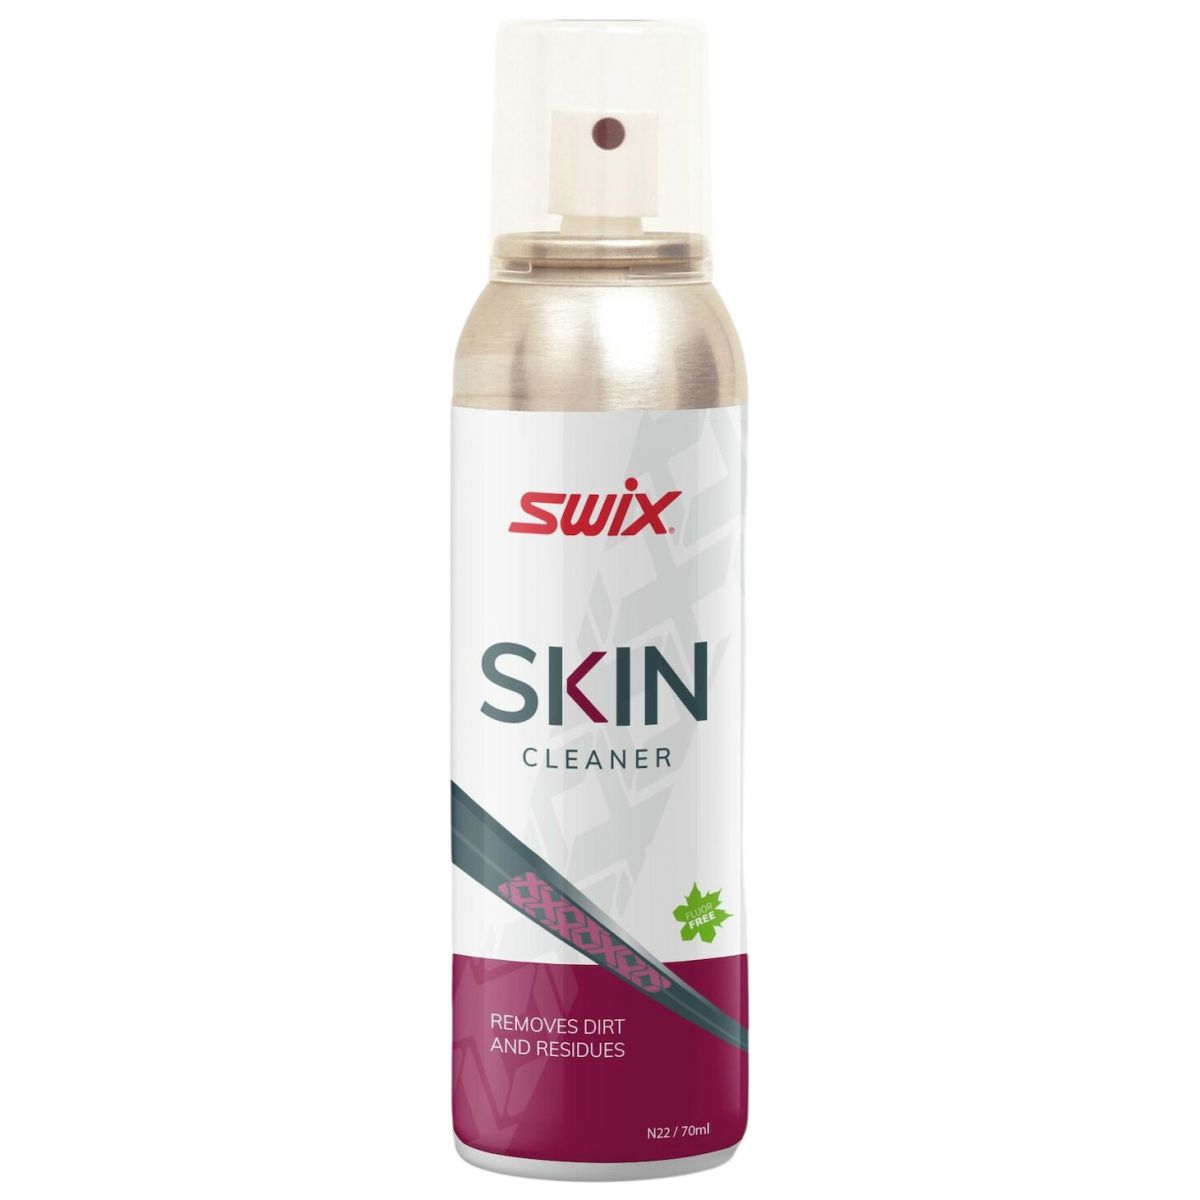 Billede af Swix Skin Cleaner, spray, 70ml hos Skisport.dk